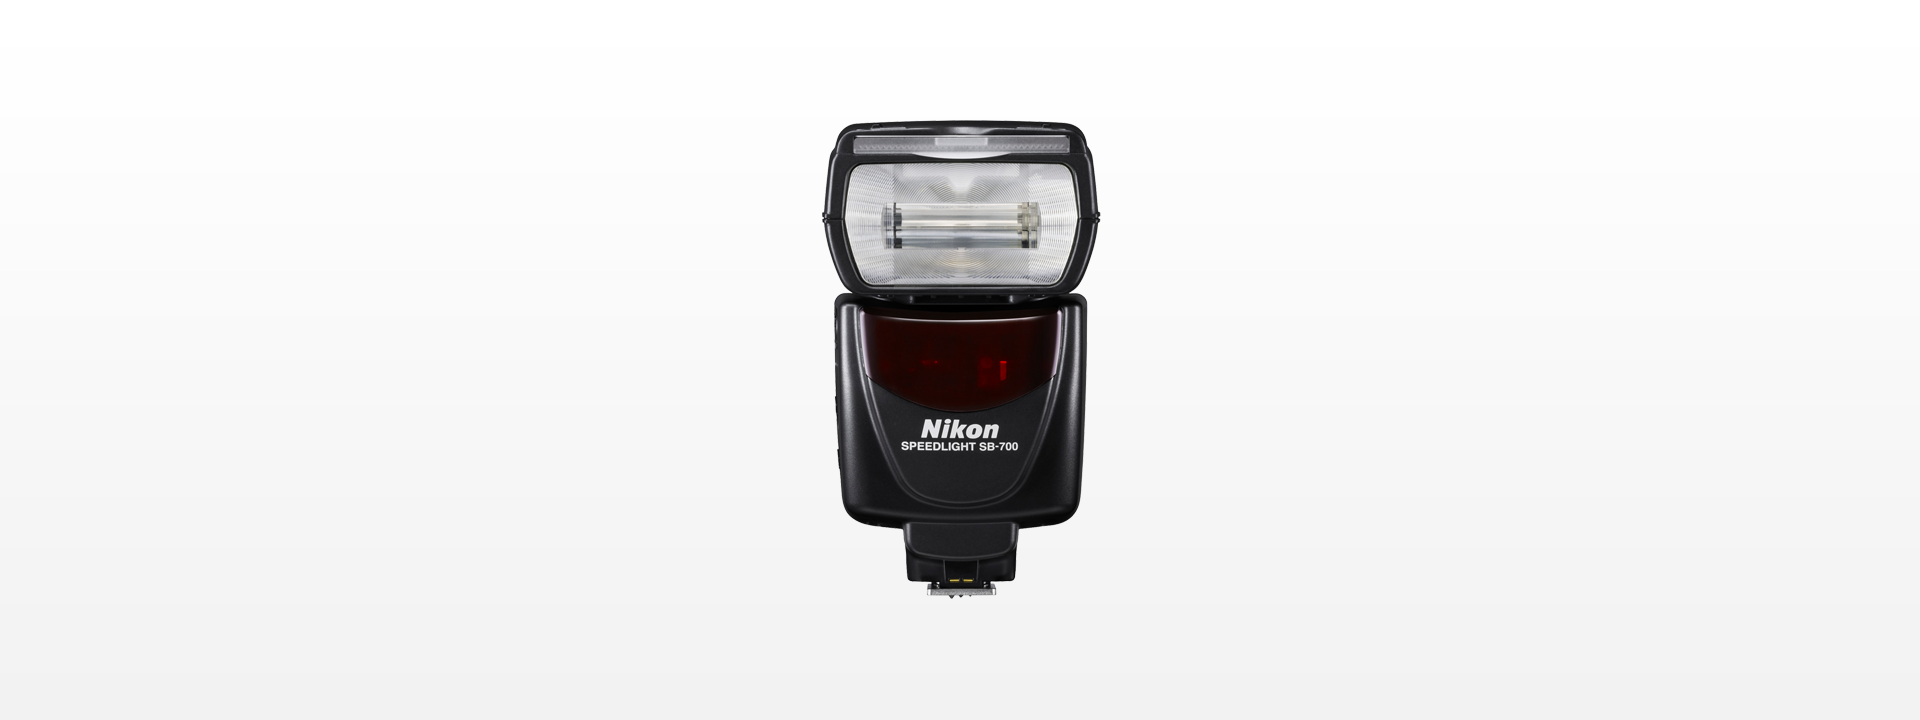 【付属品完備】Nikon SB-700 SPEEDLITE ストロボ